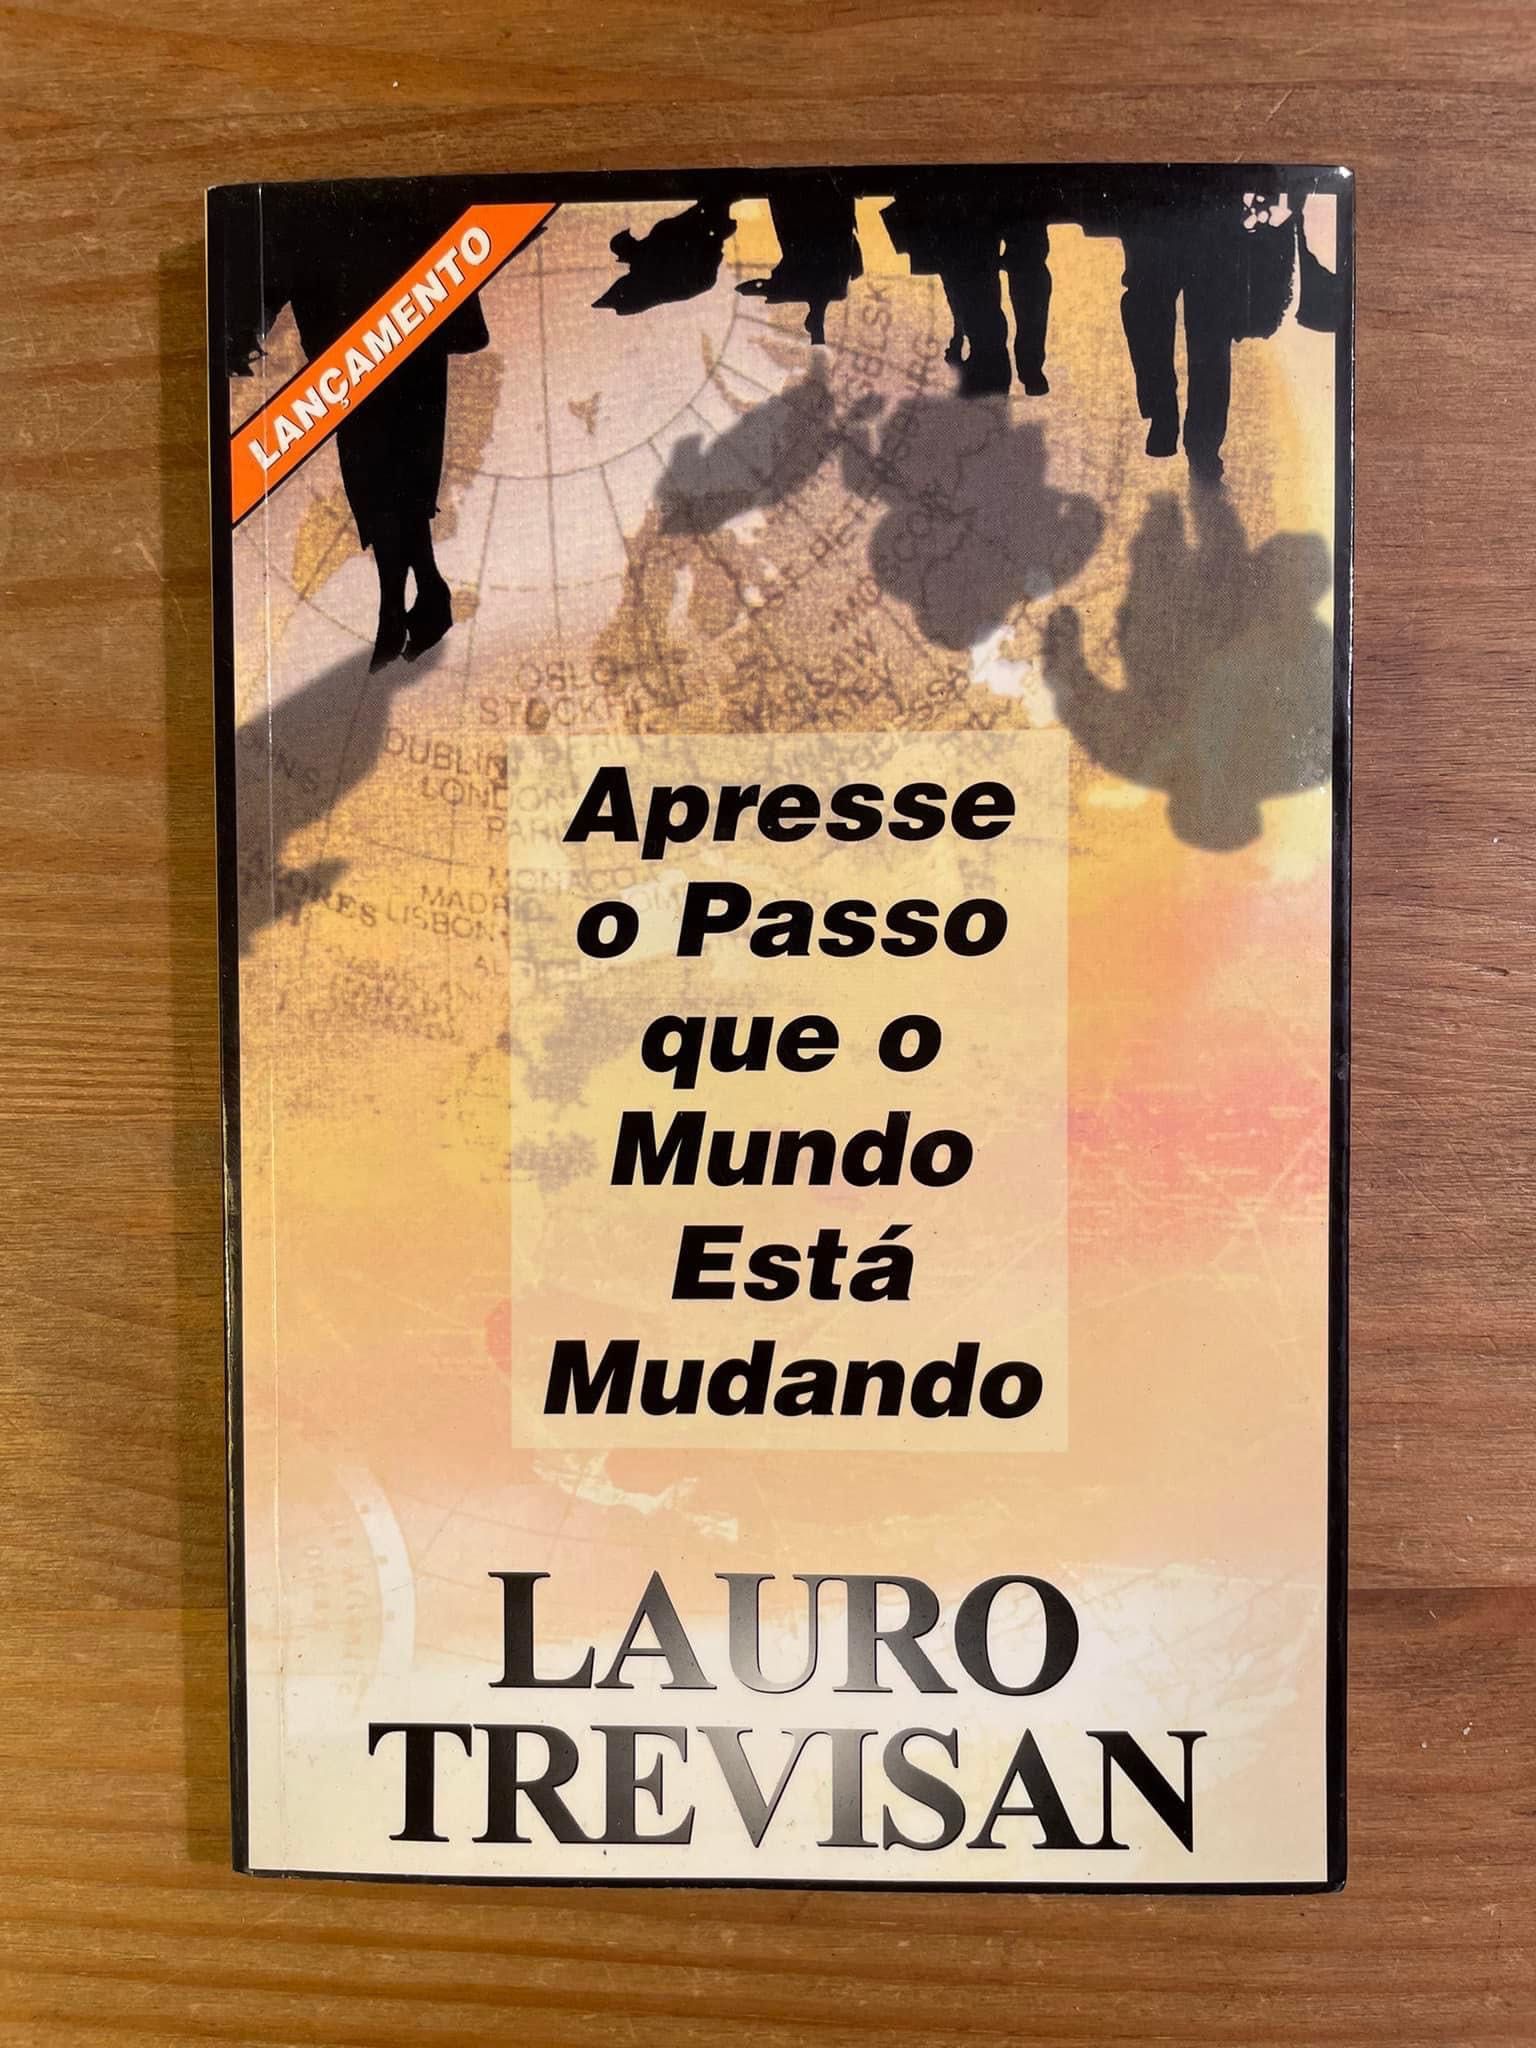 Apresse o Passo que o Mundo está Mudando - Lauro Trevisan (p. grátis)